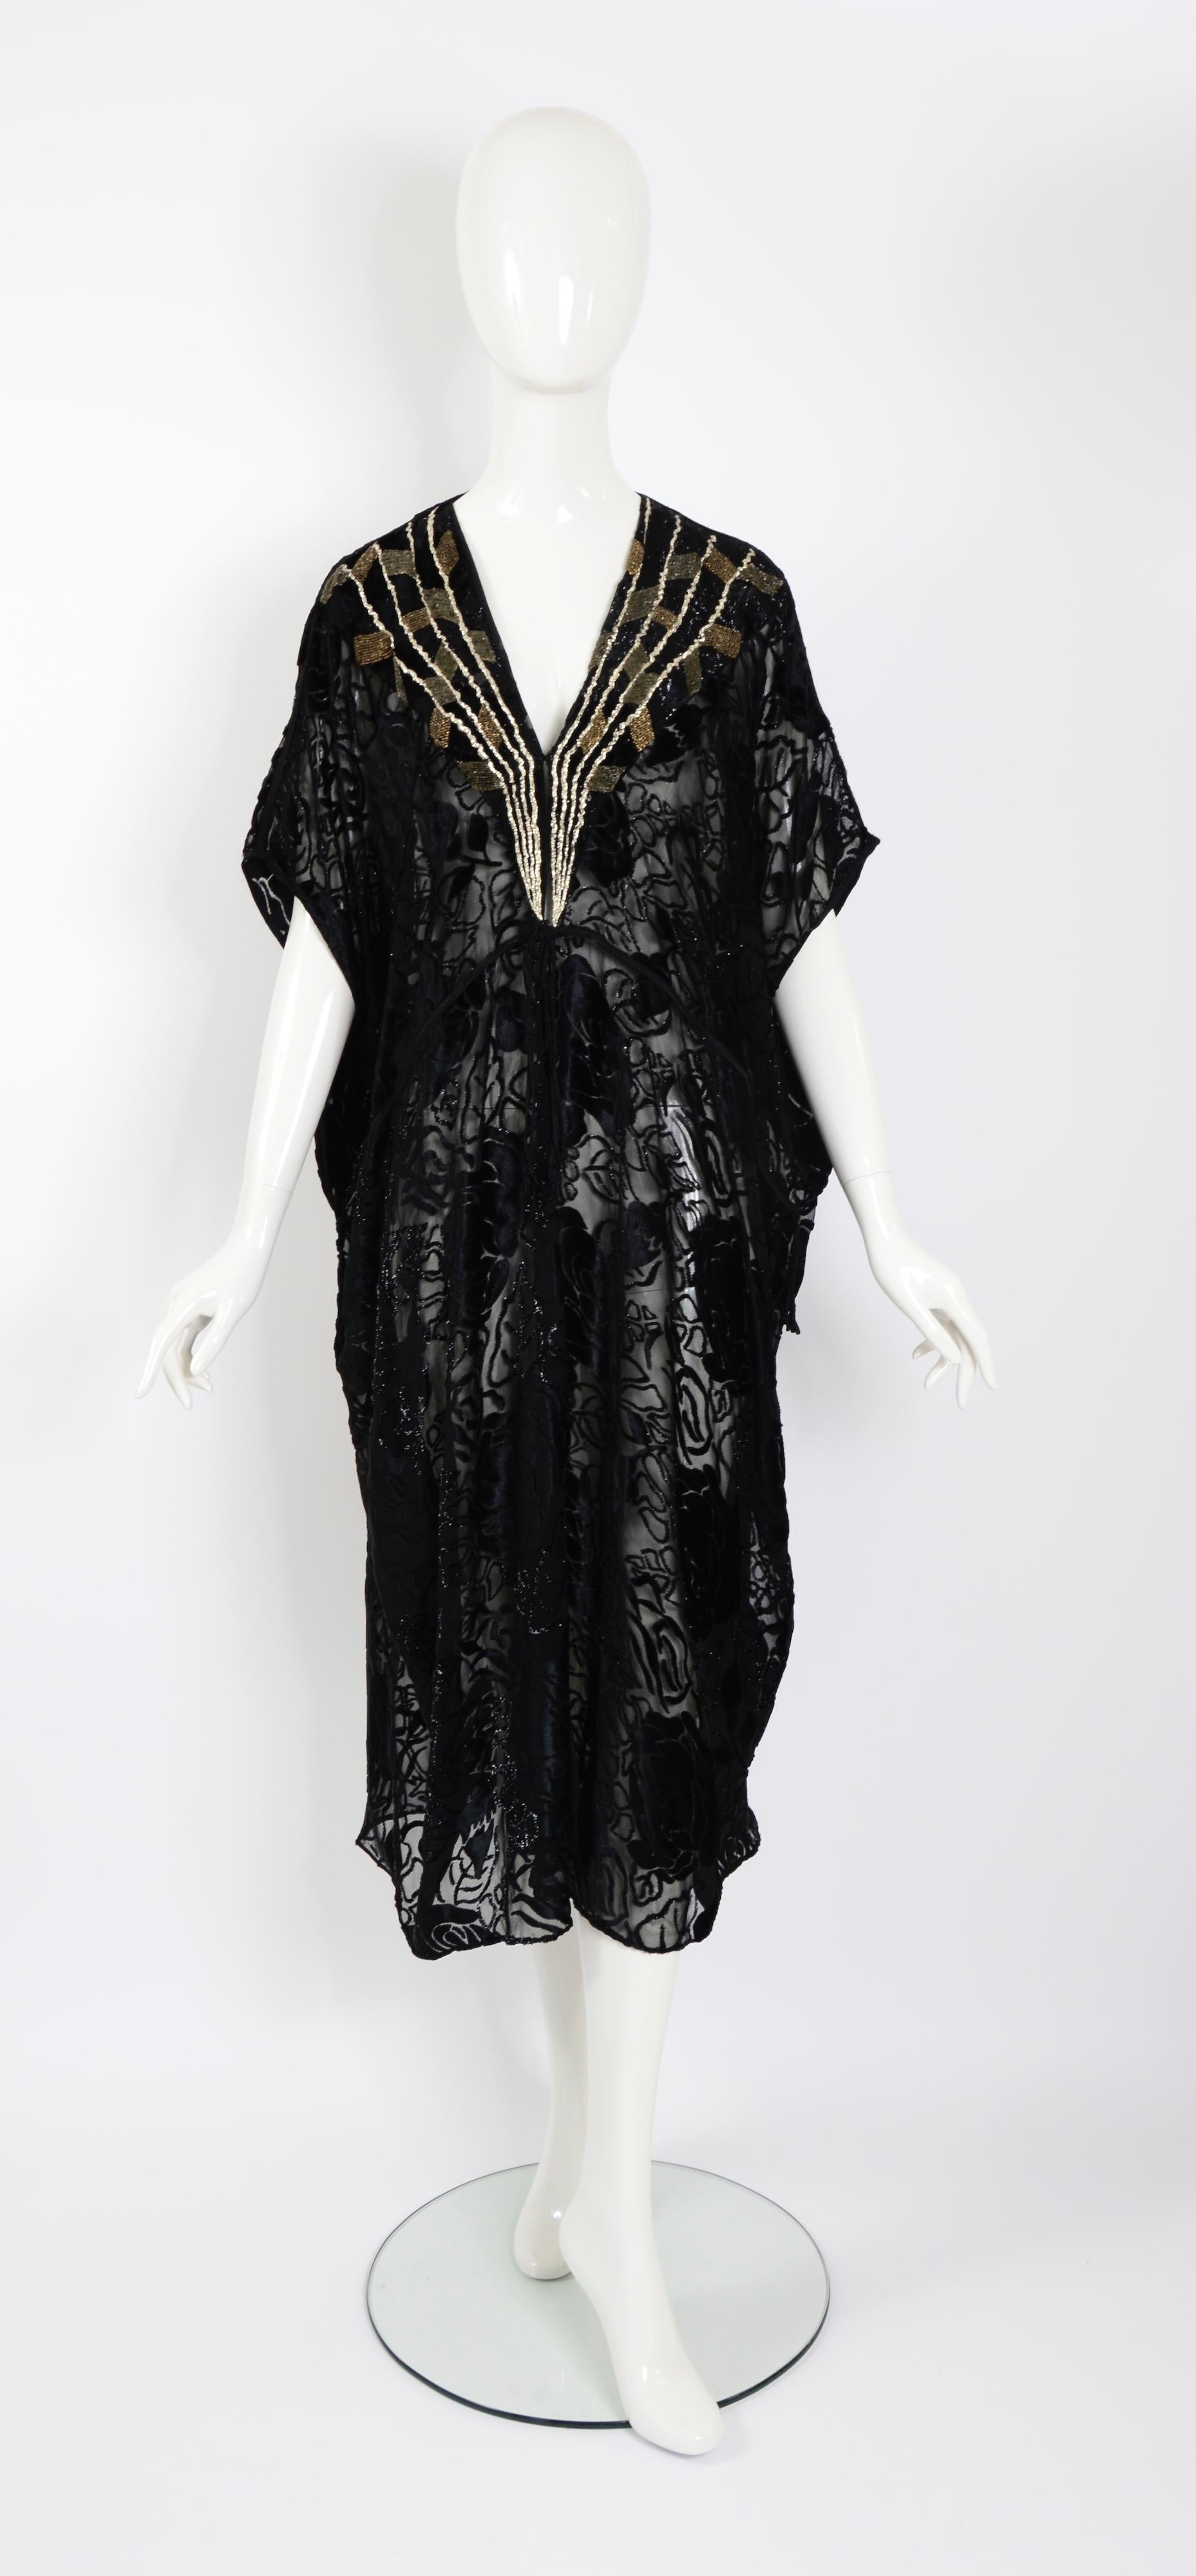 Magnifique caftan Thea Porter Couture. 
Le caftan est principalement composé de velours de soie noir dévoré à motif floral. Des perles dorées et argentées courent horizontalement et en diagonale entre les bandes. La robe, qui ressemble à un caftan,